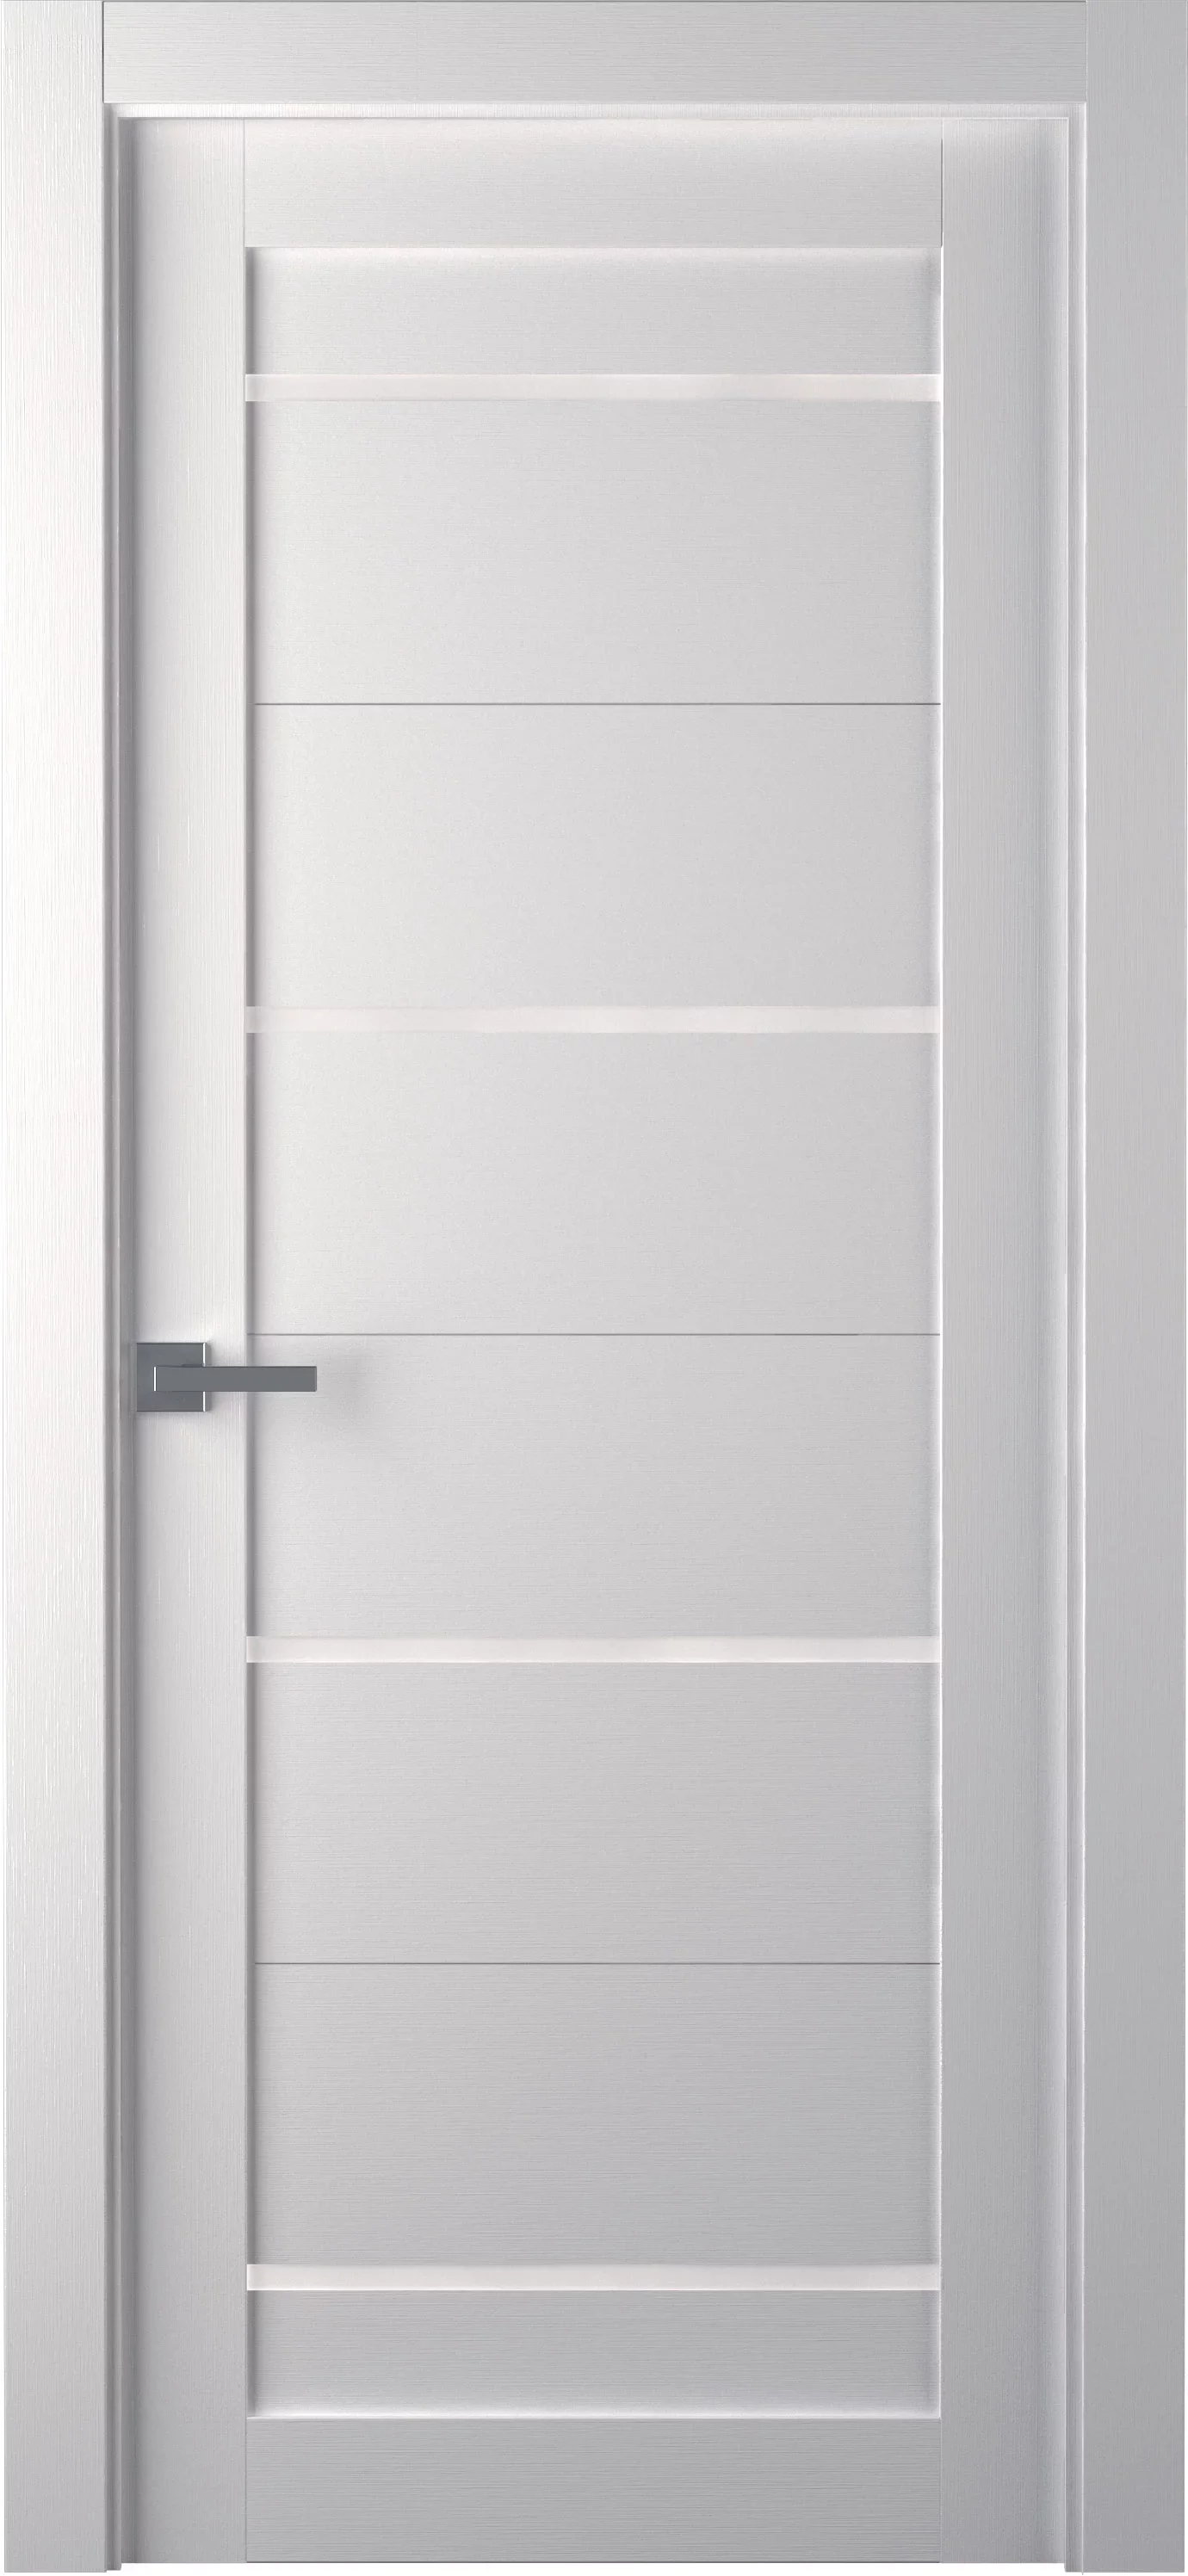 Durų varčia MIKA baltos tekstūrinės spalvos, su matiniu stiklu, 800 x 2000 mm, universali